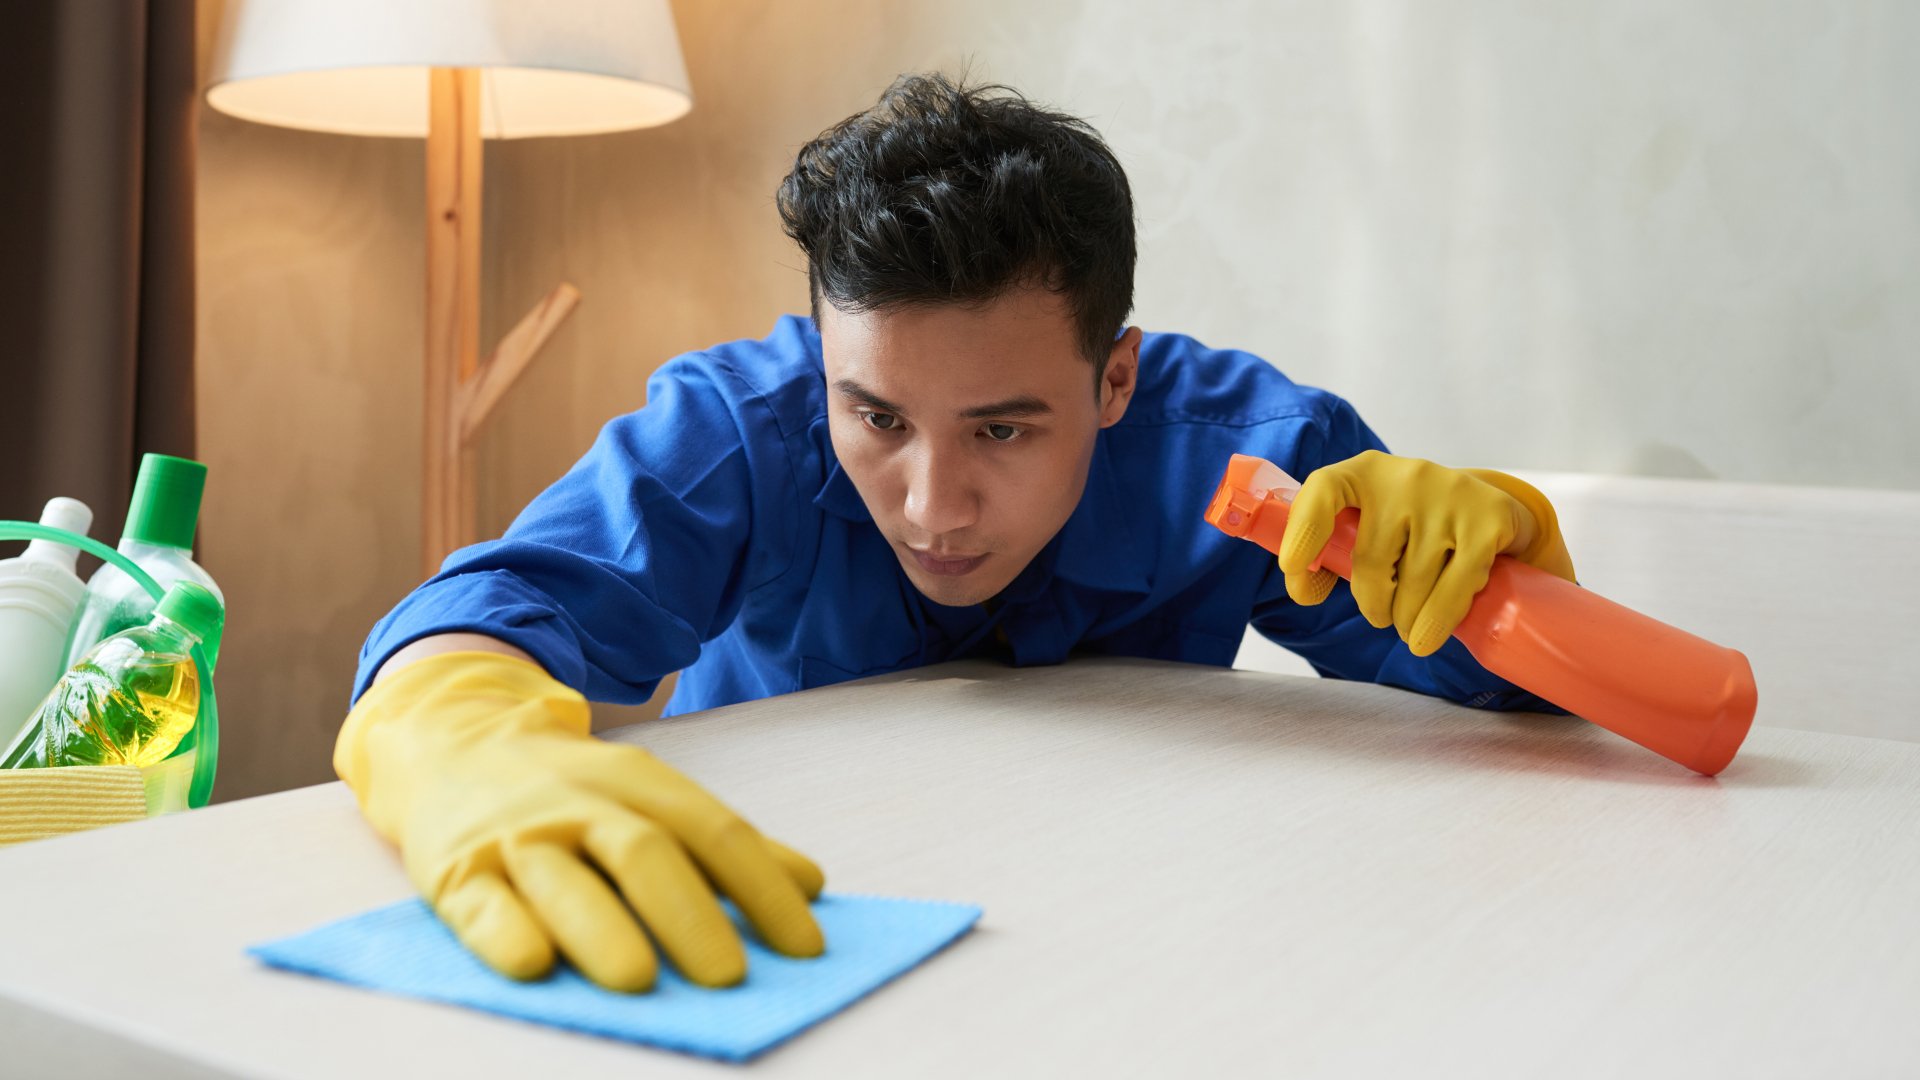 Limpieza ecológica: consejos para limpiar la casa sin agredir el medio ambiente